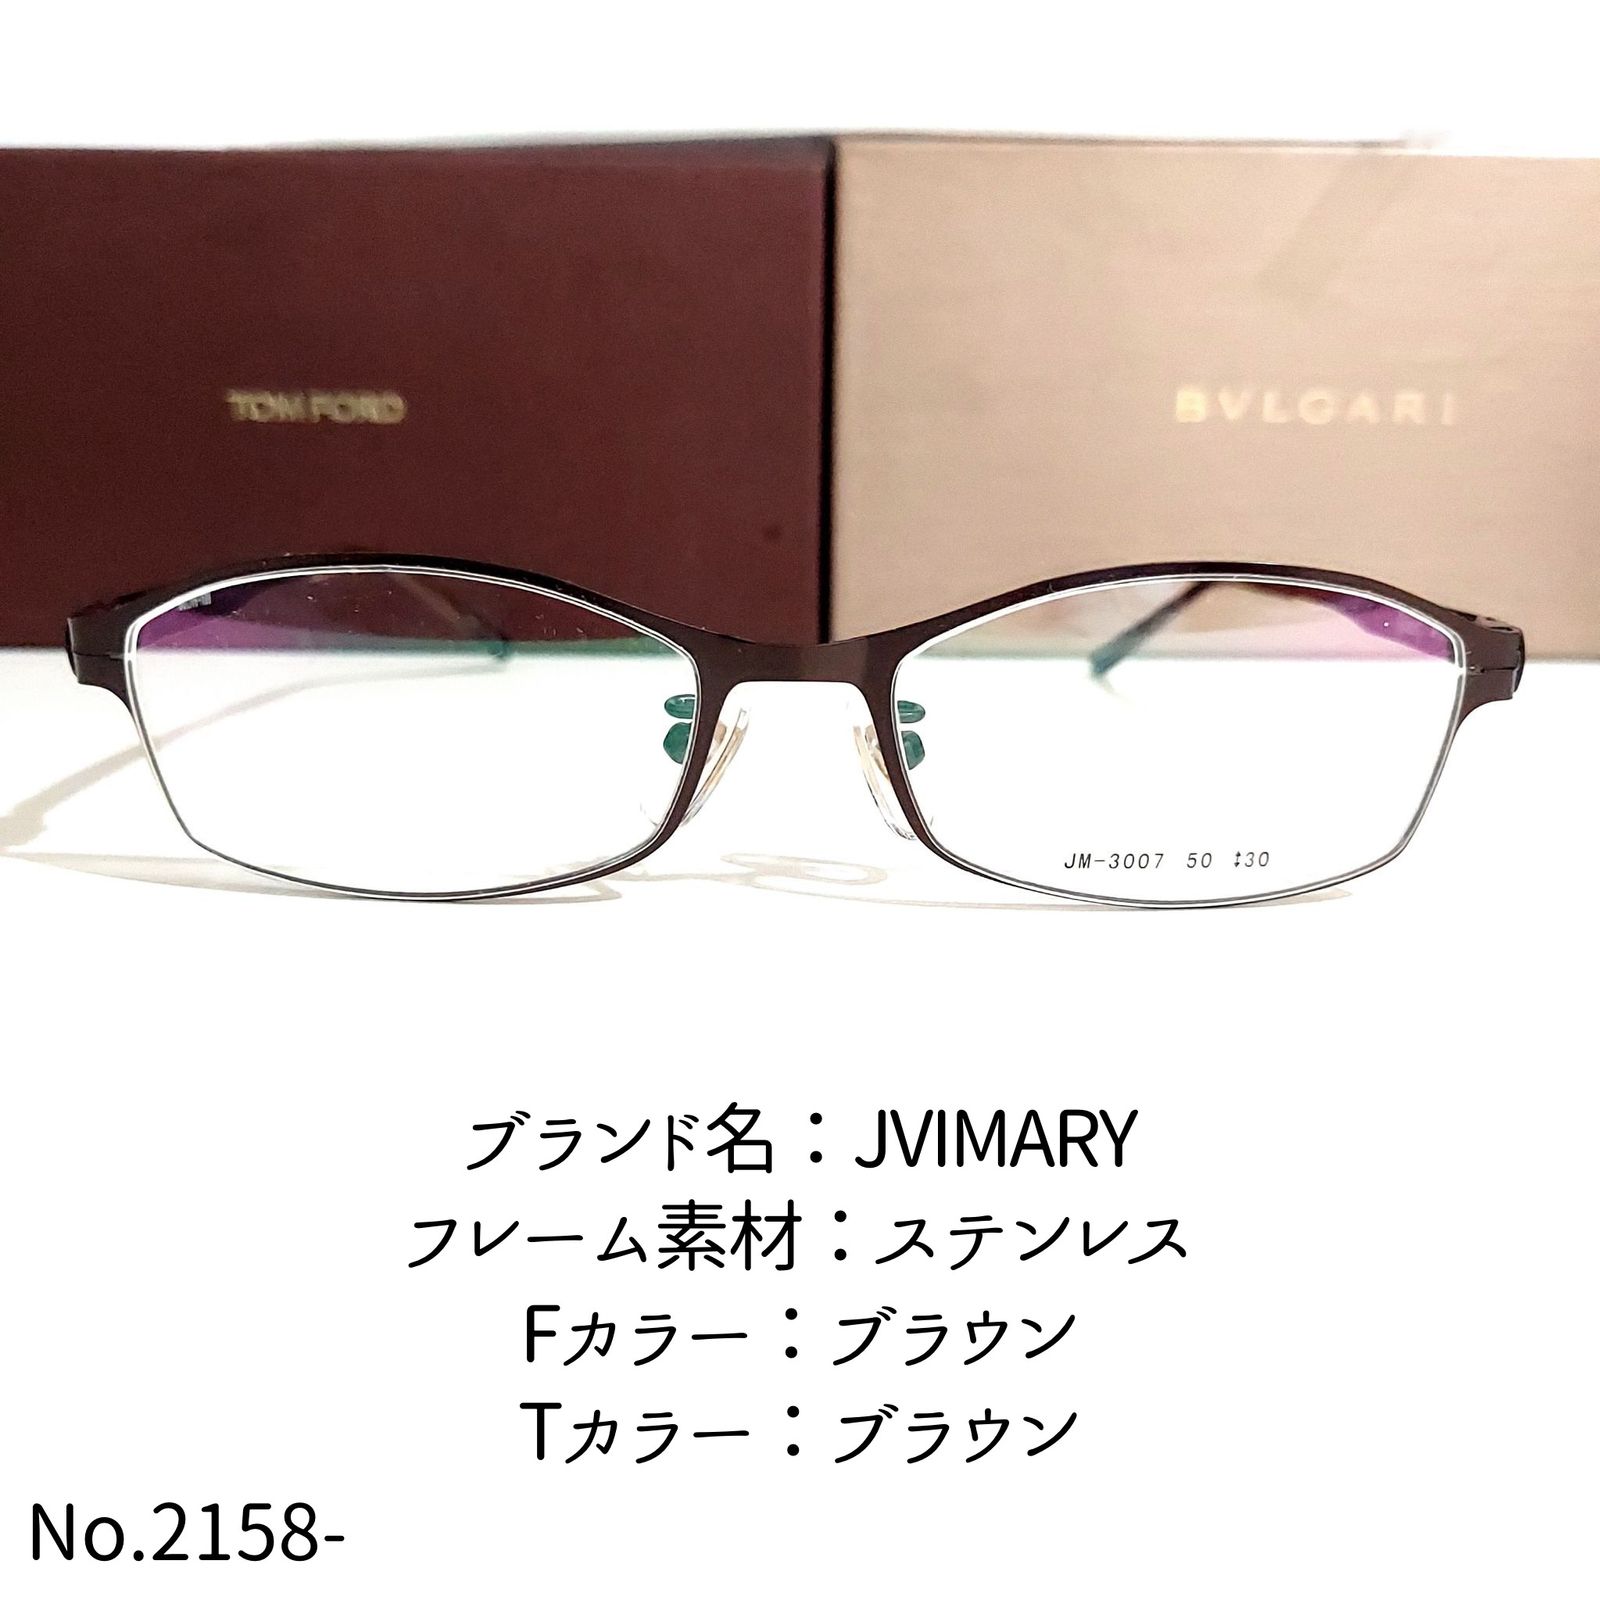 No.2158-メガネ JVIMARY【フレームのみ価格】-